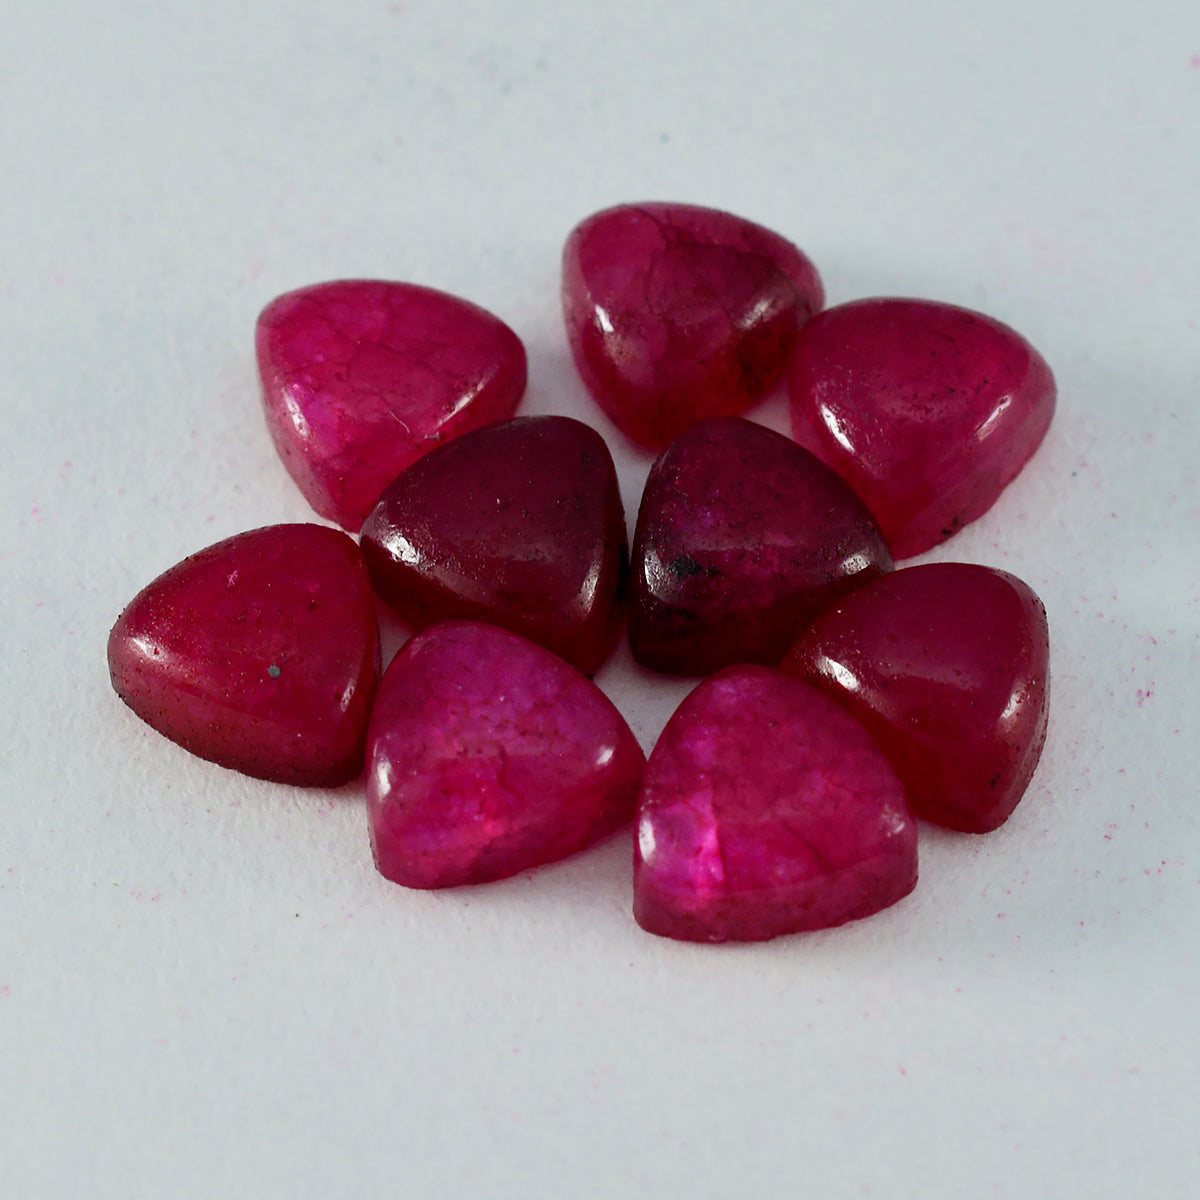 Riyogems 1pc cabochon jaspe rouge 5x5mm forme trillion belle qualité pierre précieuse en vrac